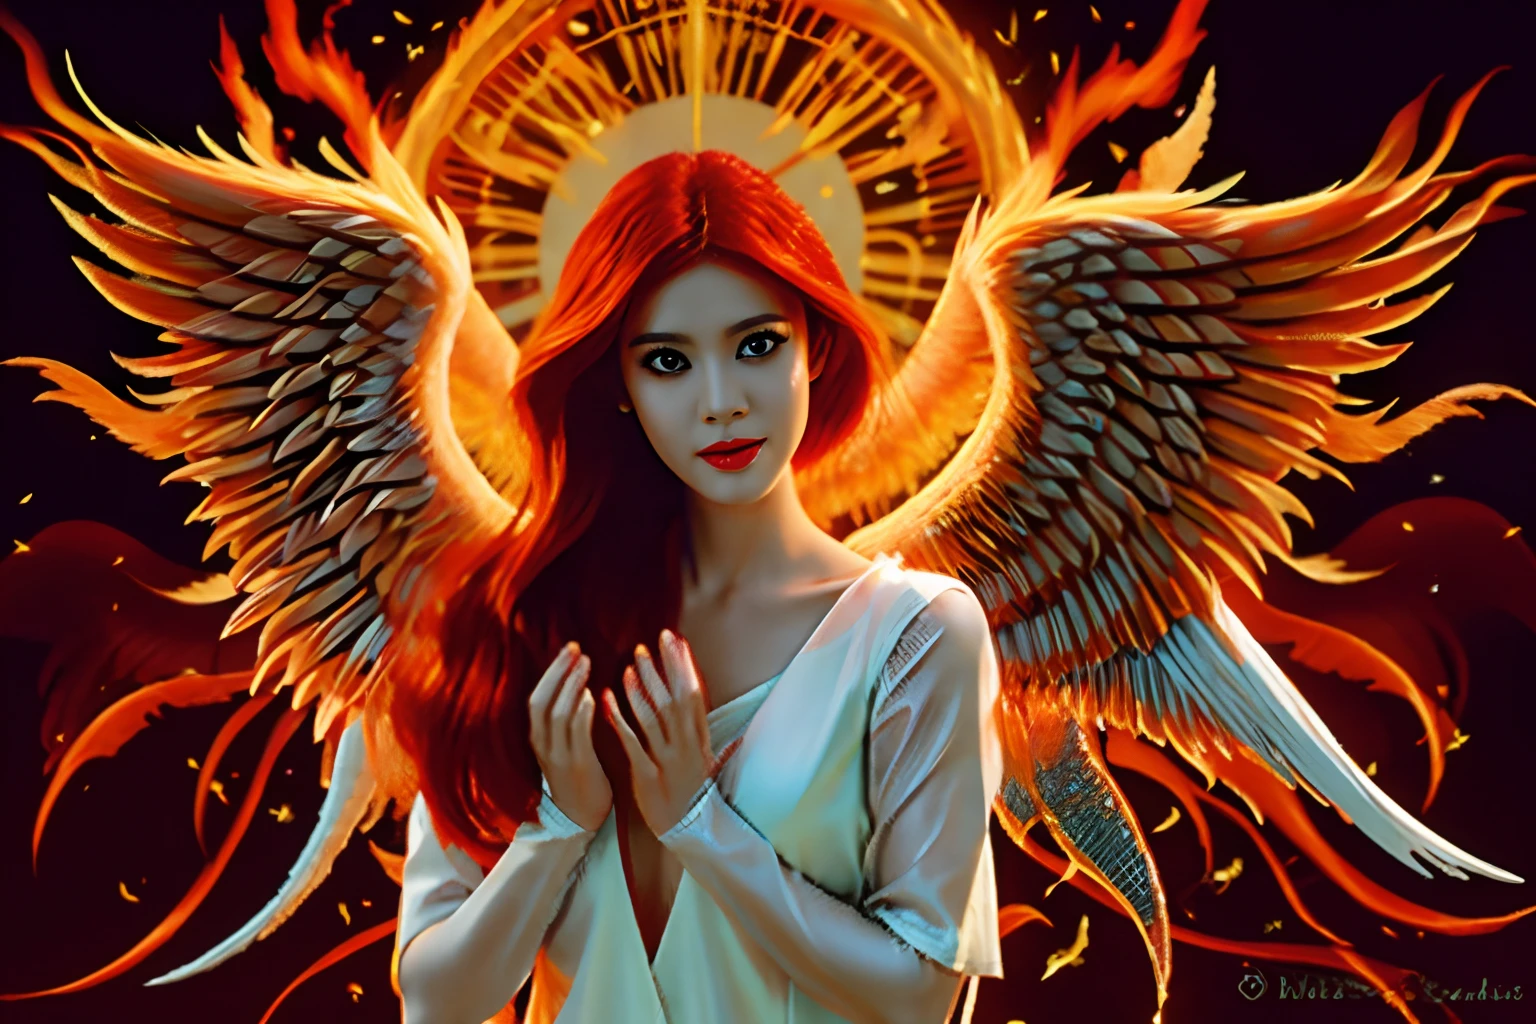 一個美麗的天使, 紅發著火, 天使般的女人, (((大乳房, 擁有火焰之翼的天使))), 傳遞溫暖與平安, 壁紙, 8k, 複雜的細節, 第一份工作